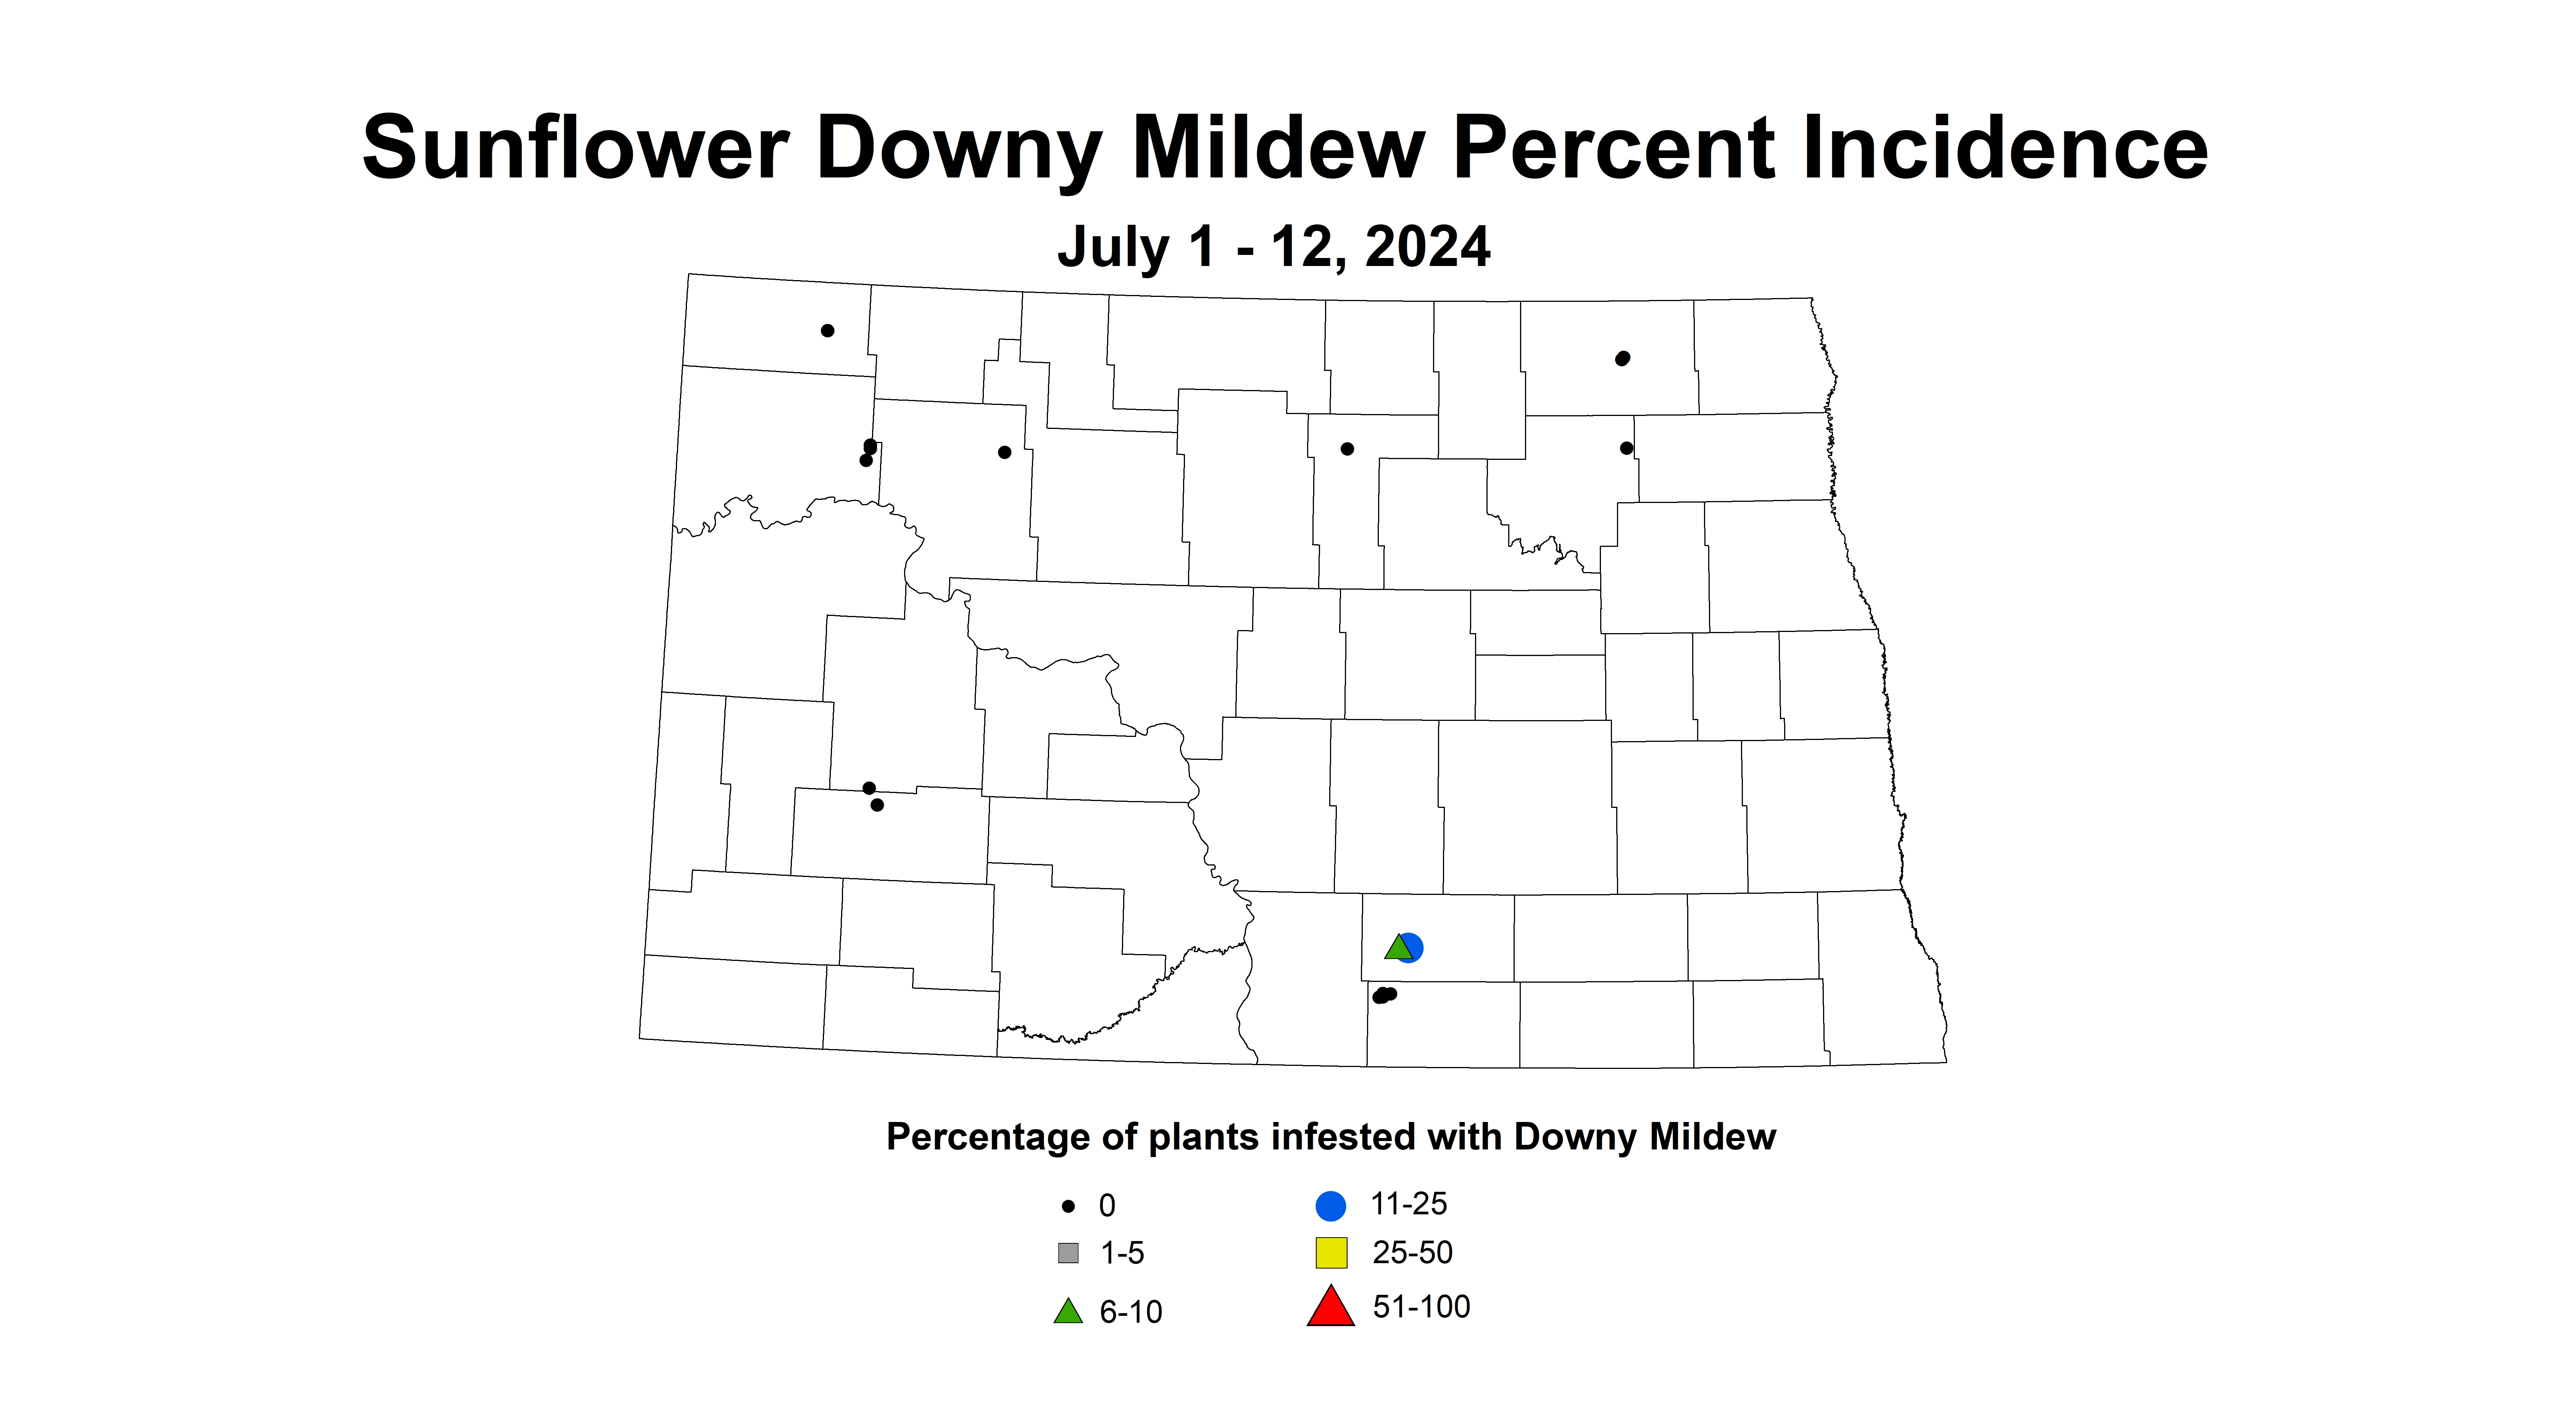 sunflower downy mildew July 1 - 12 2024